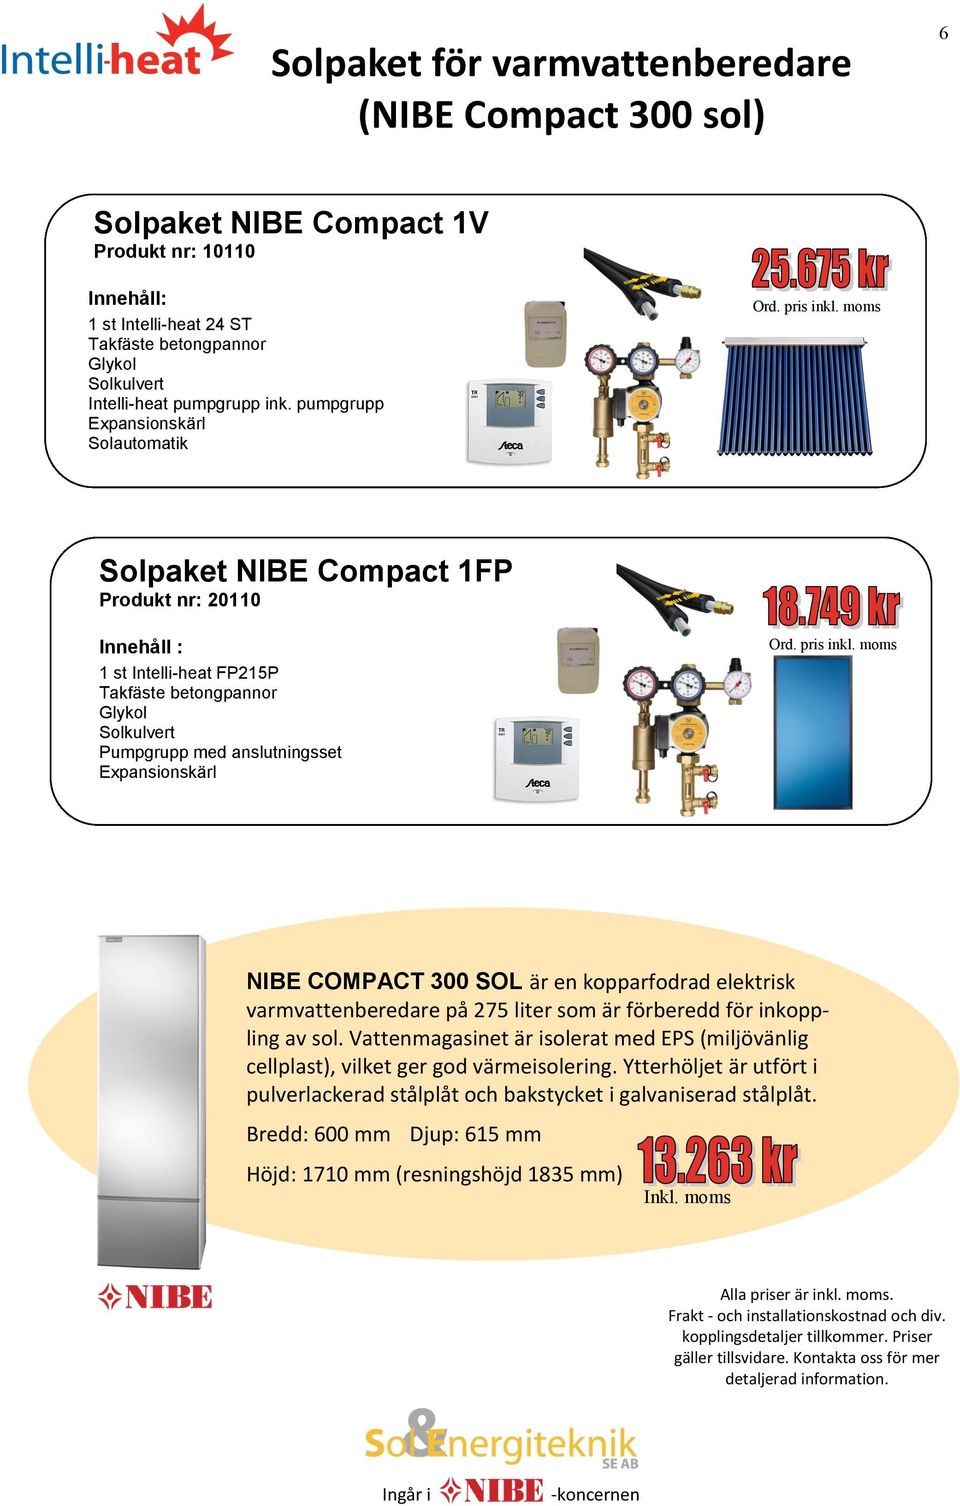 NIBE COMPACT 300 SOL är en kopparfodrad elektrisk varmvattenberedare på 275 liter som är förberedd för inkoppling av sol.